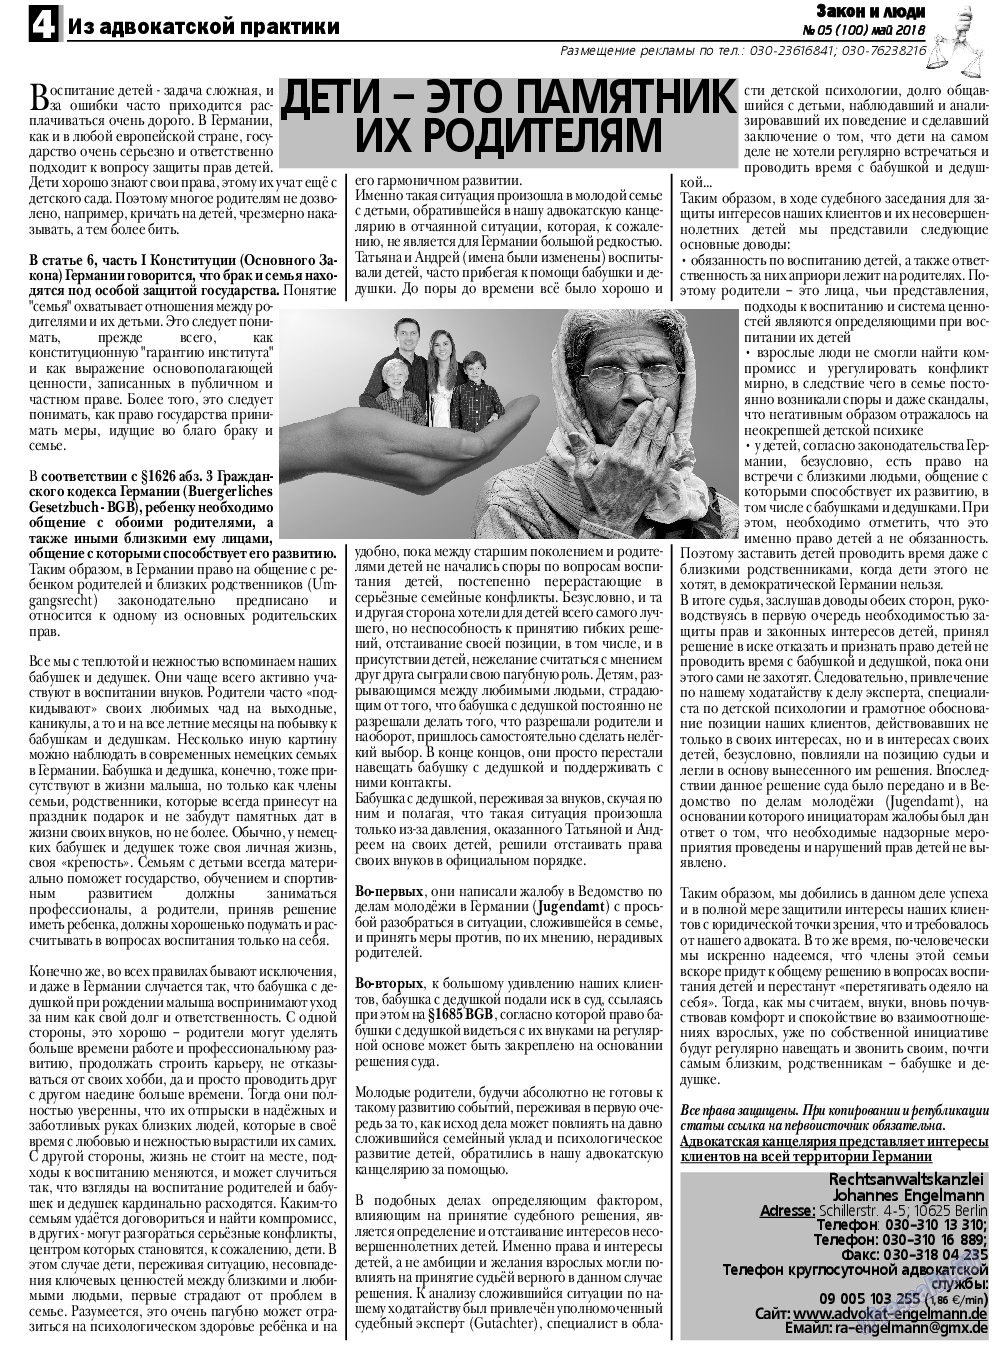 Закон и люди, газета. 2018 №5 стр.4